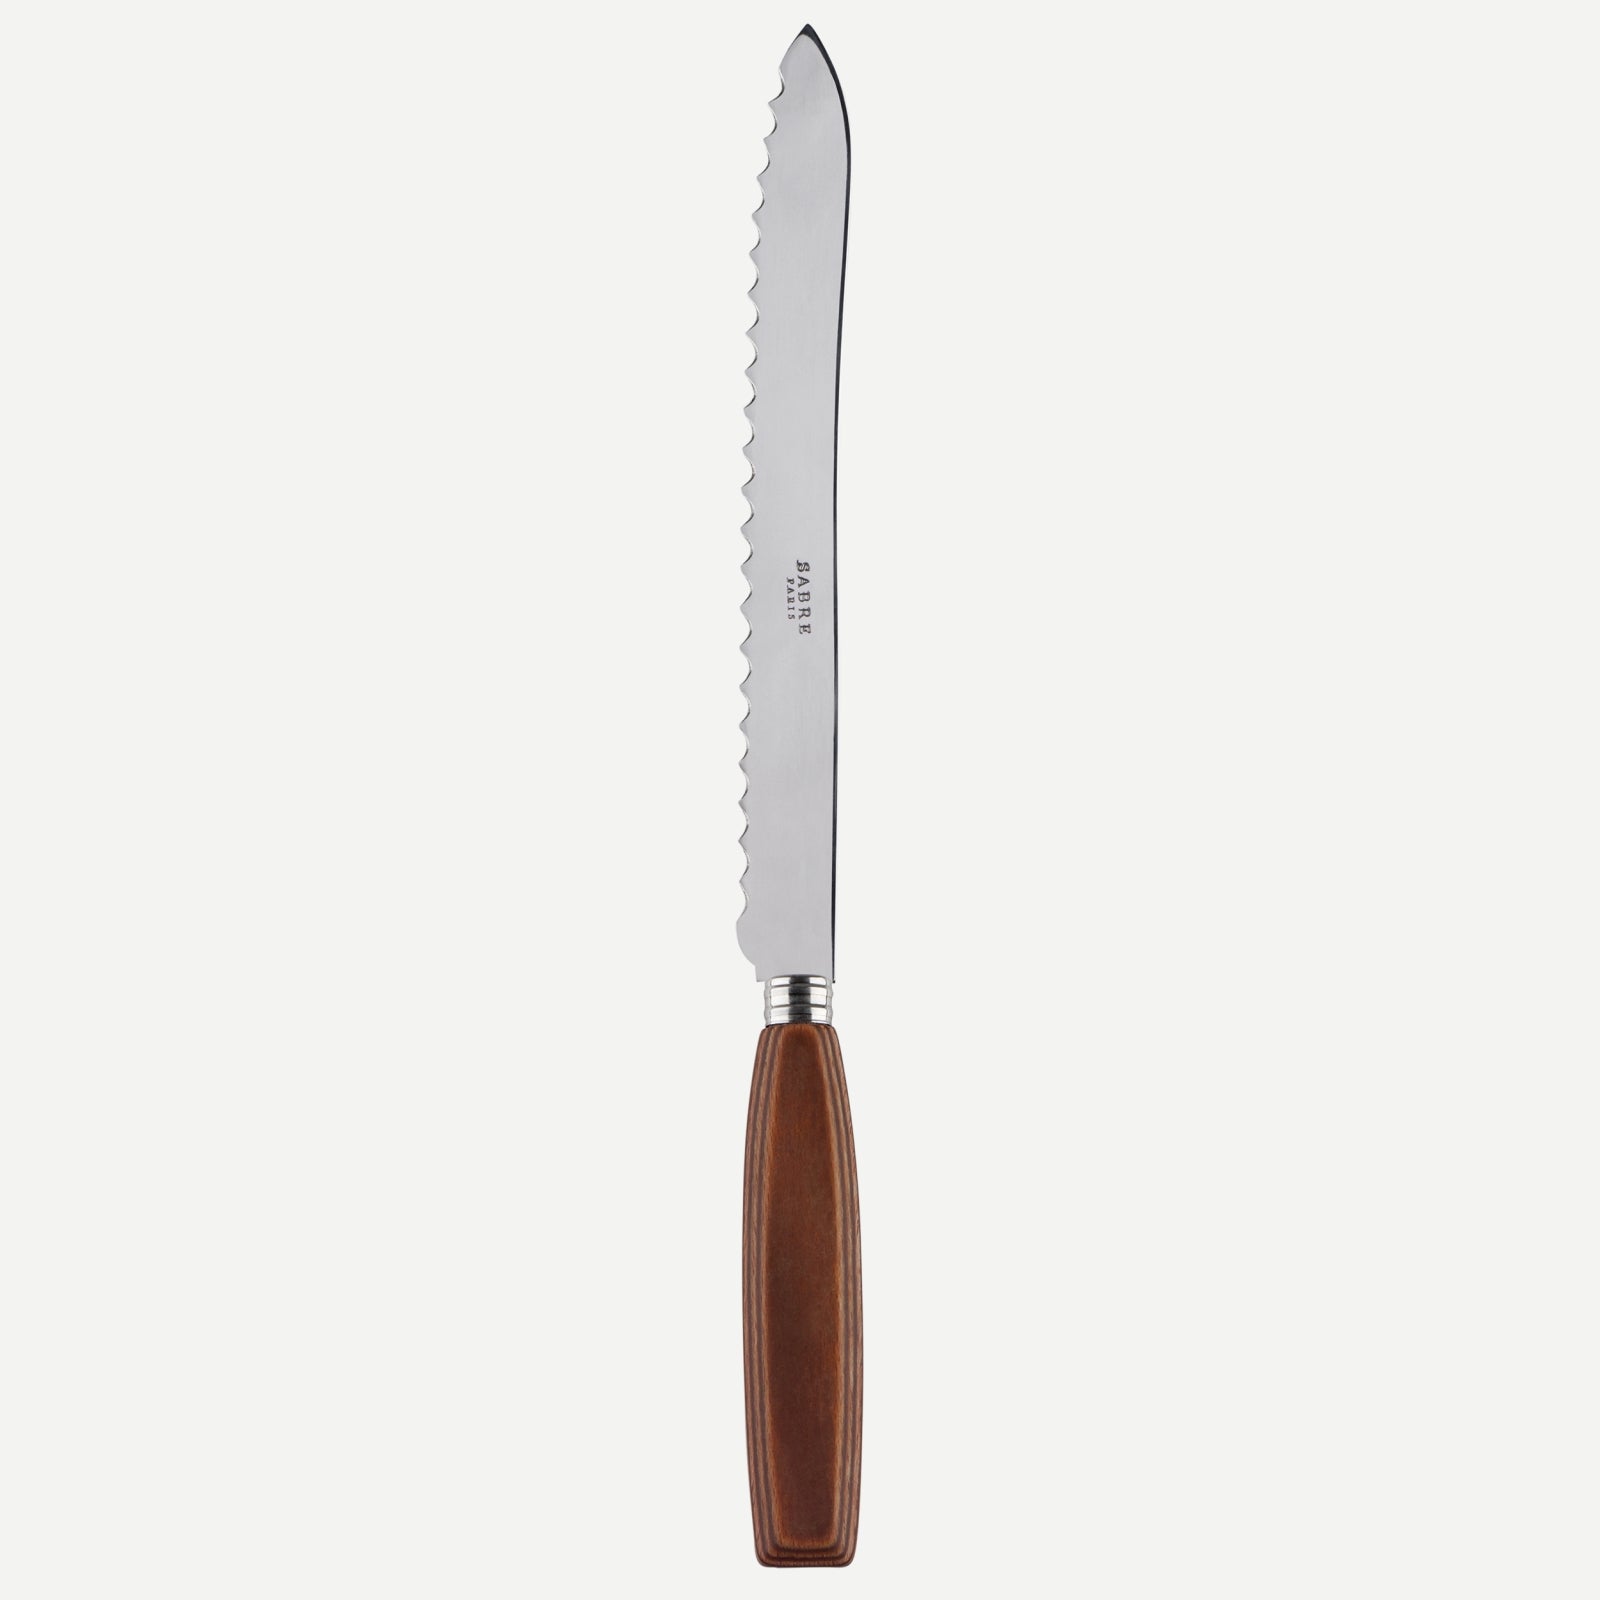 Bread knife - Djembe - Light press wood